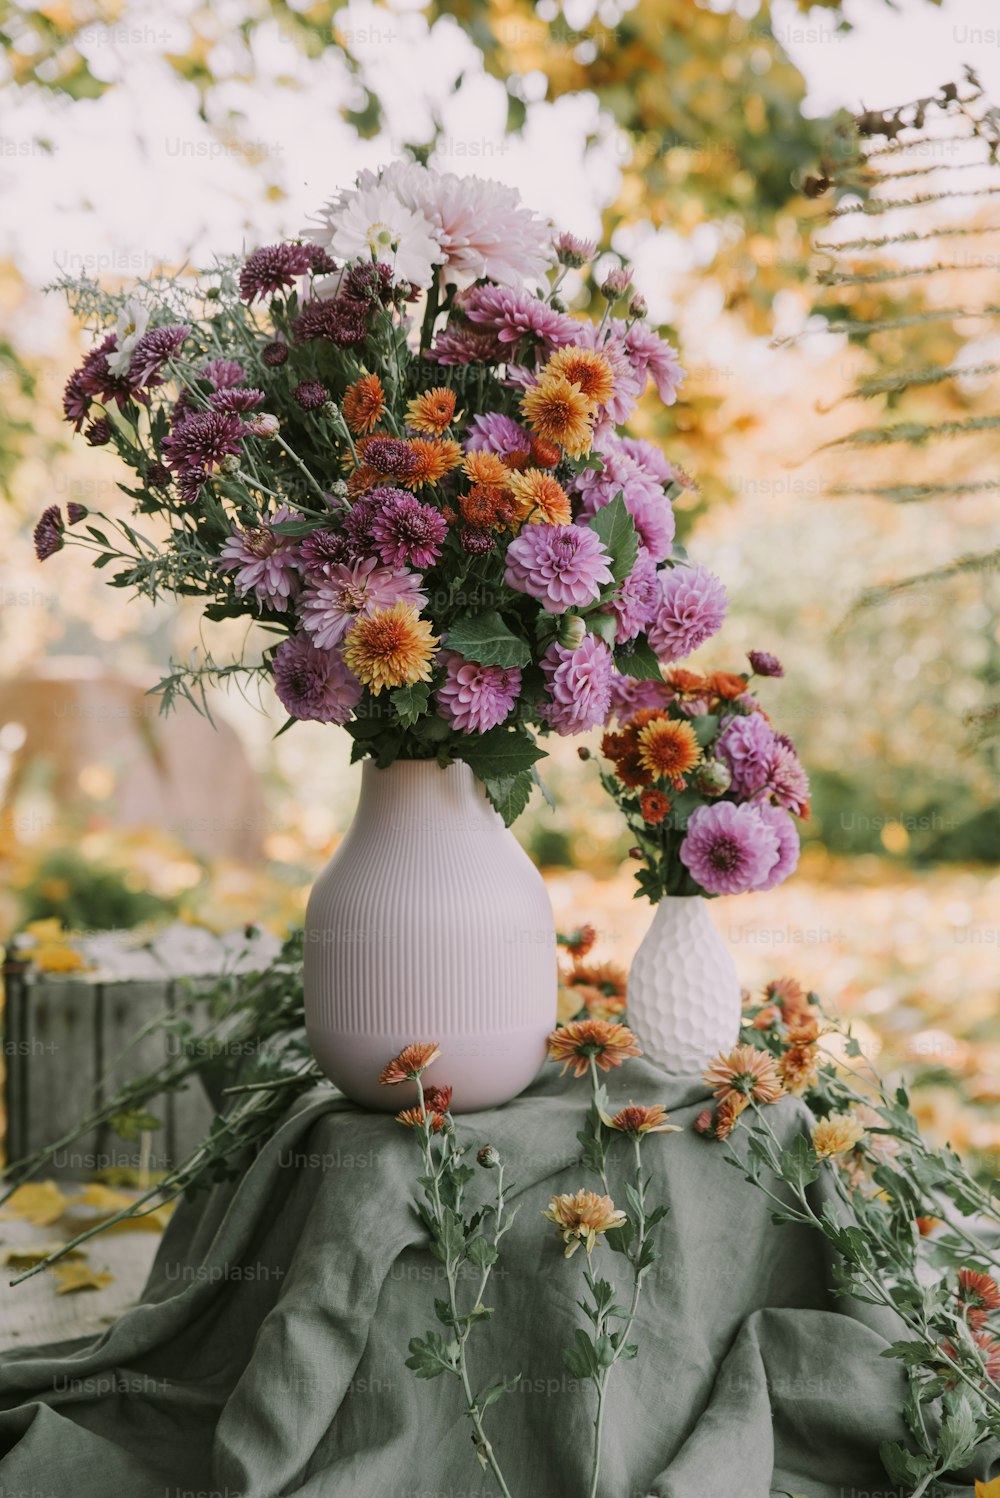 un vase blanc rempli de fleurs violettes et oranges